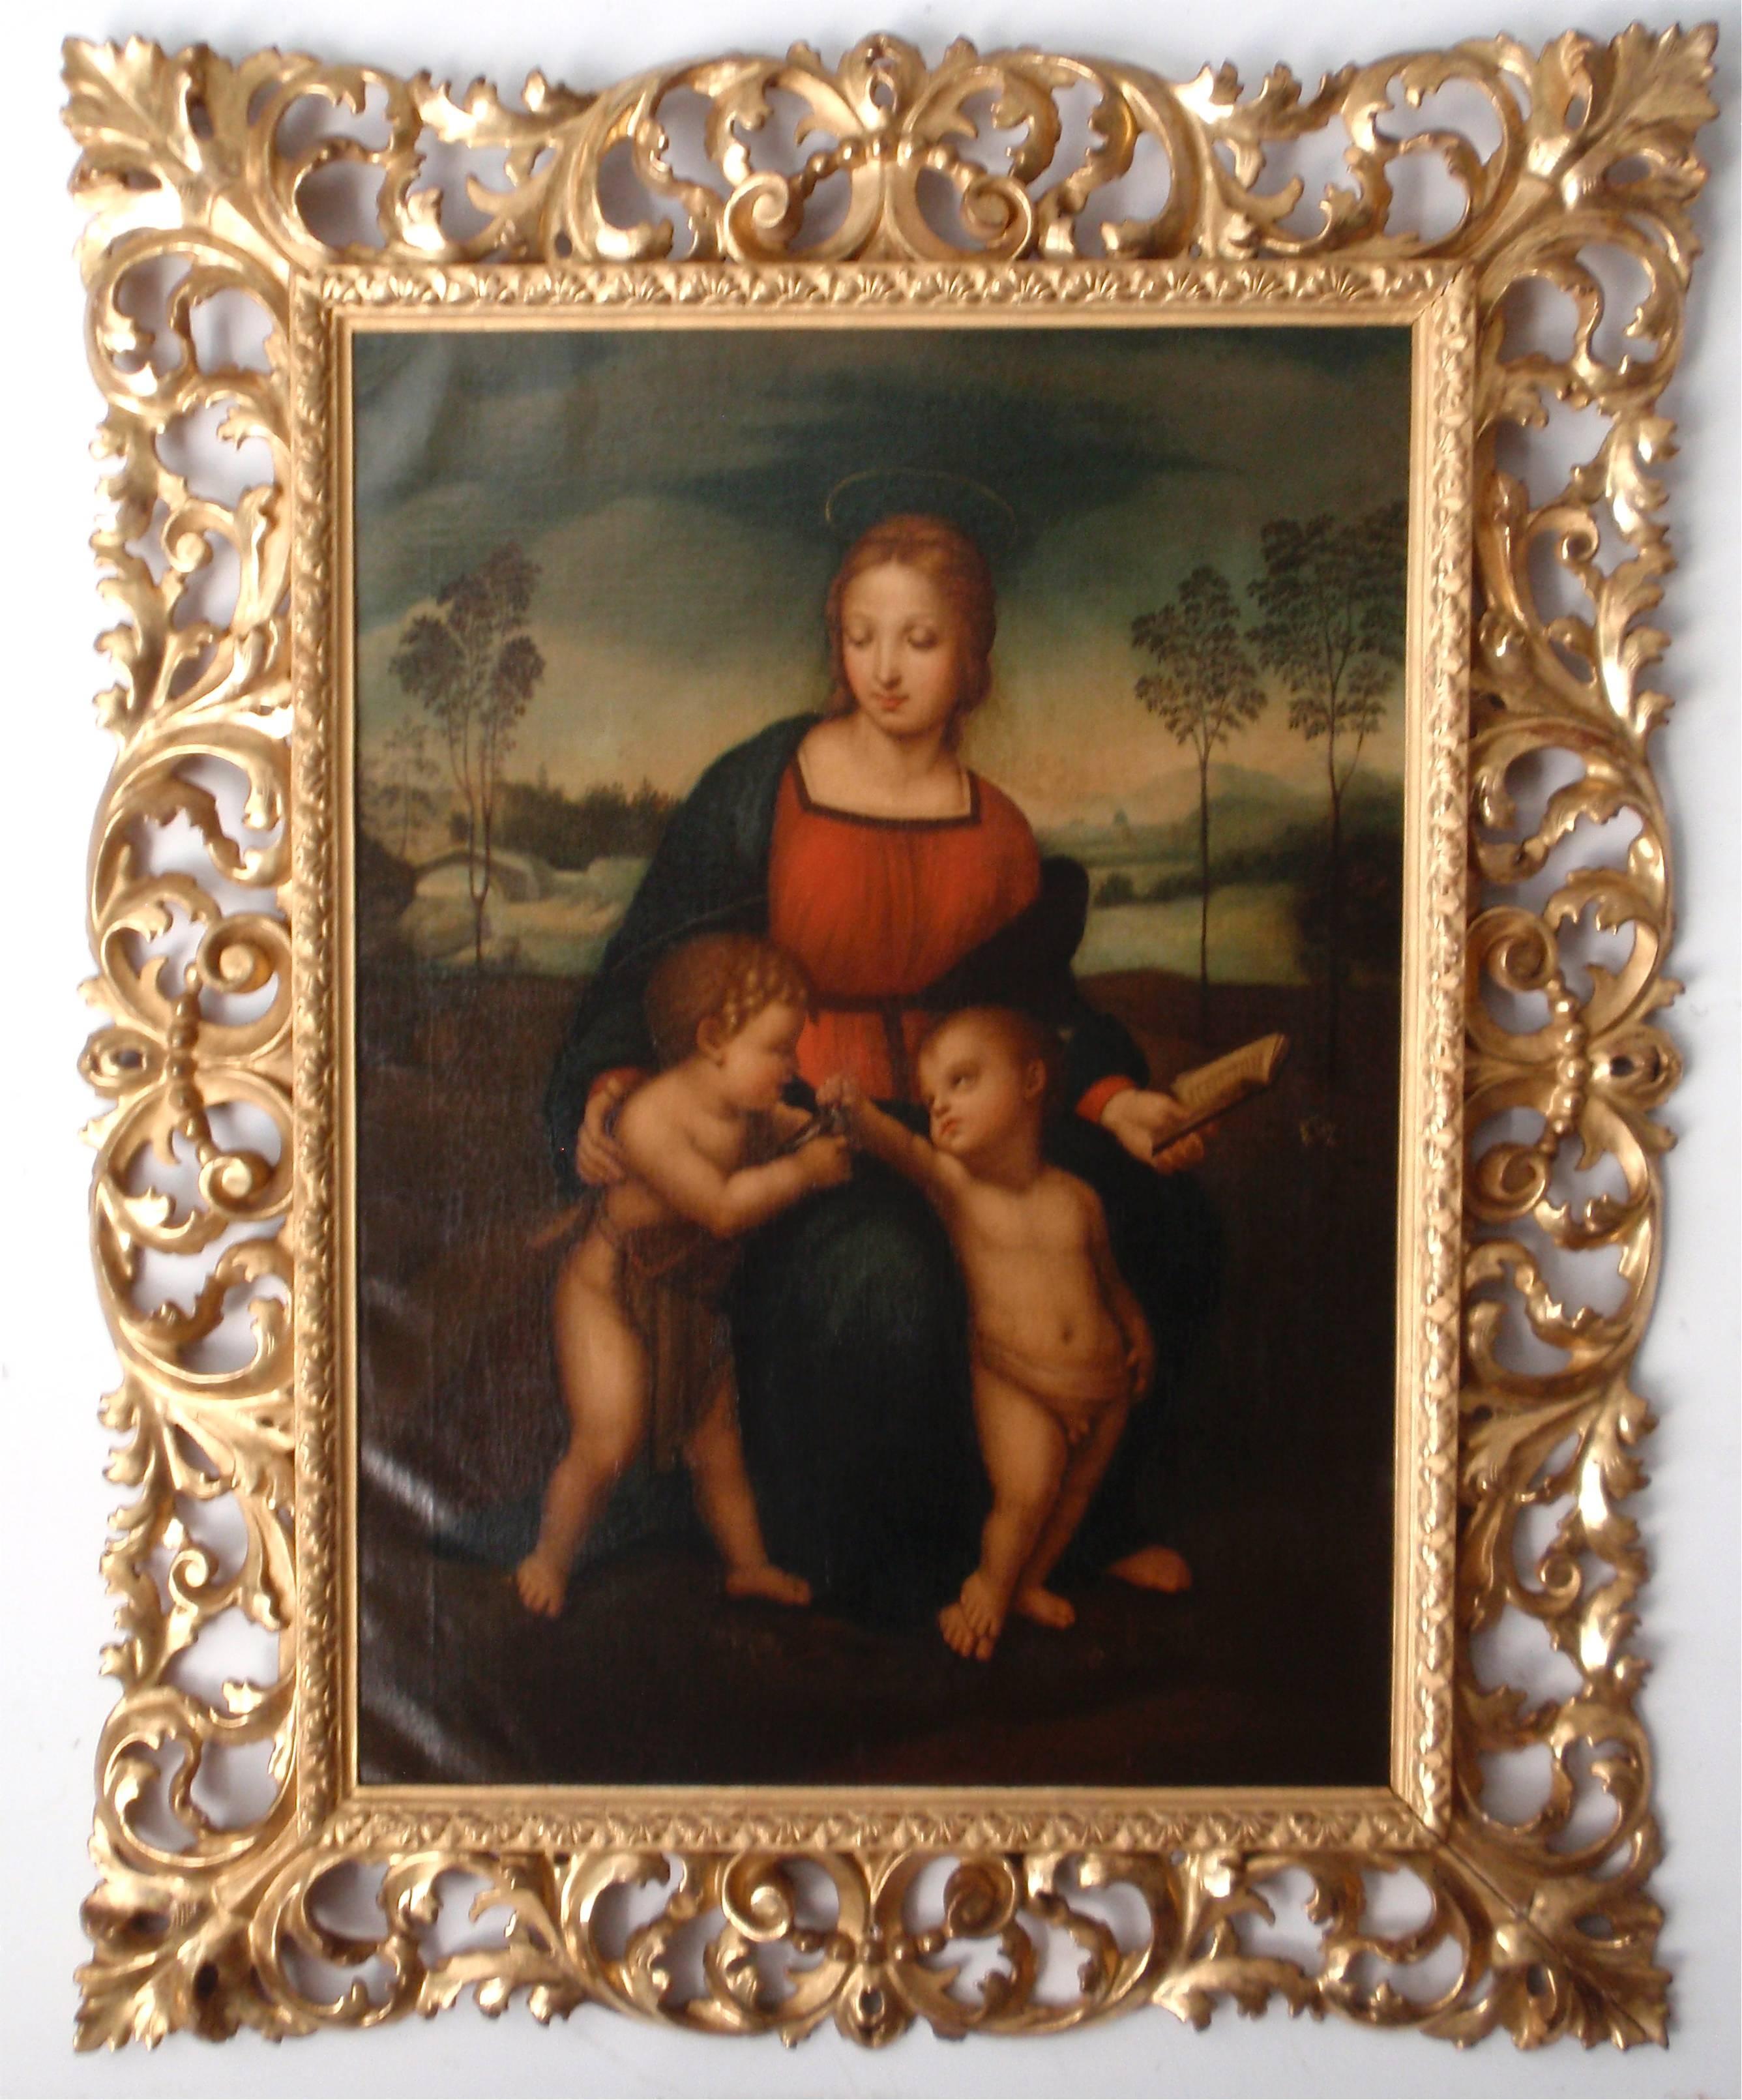 After Raffaello Sanzio da Urbino (Italian, 1483-1520), Copy after 